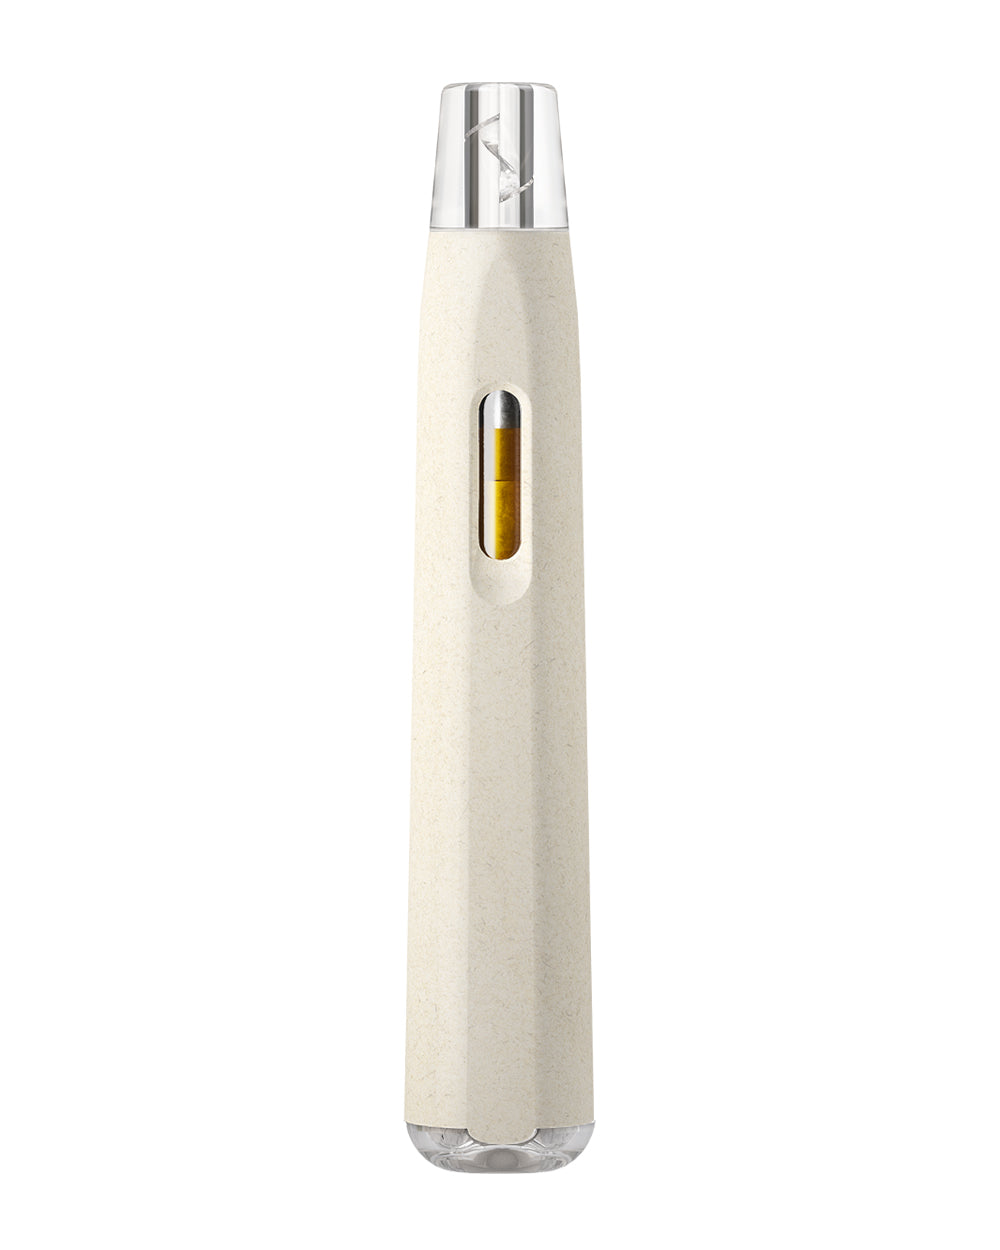 AVD | Stem White Hemp Plastic Blend Rechargeable Disposable Vape Pen w/ Clear Vortex Mouthpiece | 1mL - 220 mAh - 1